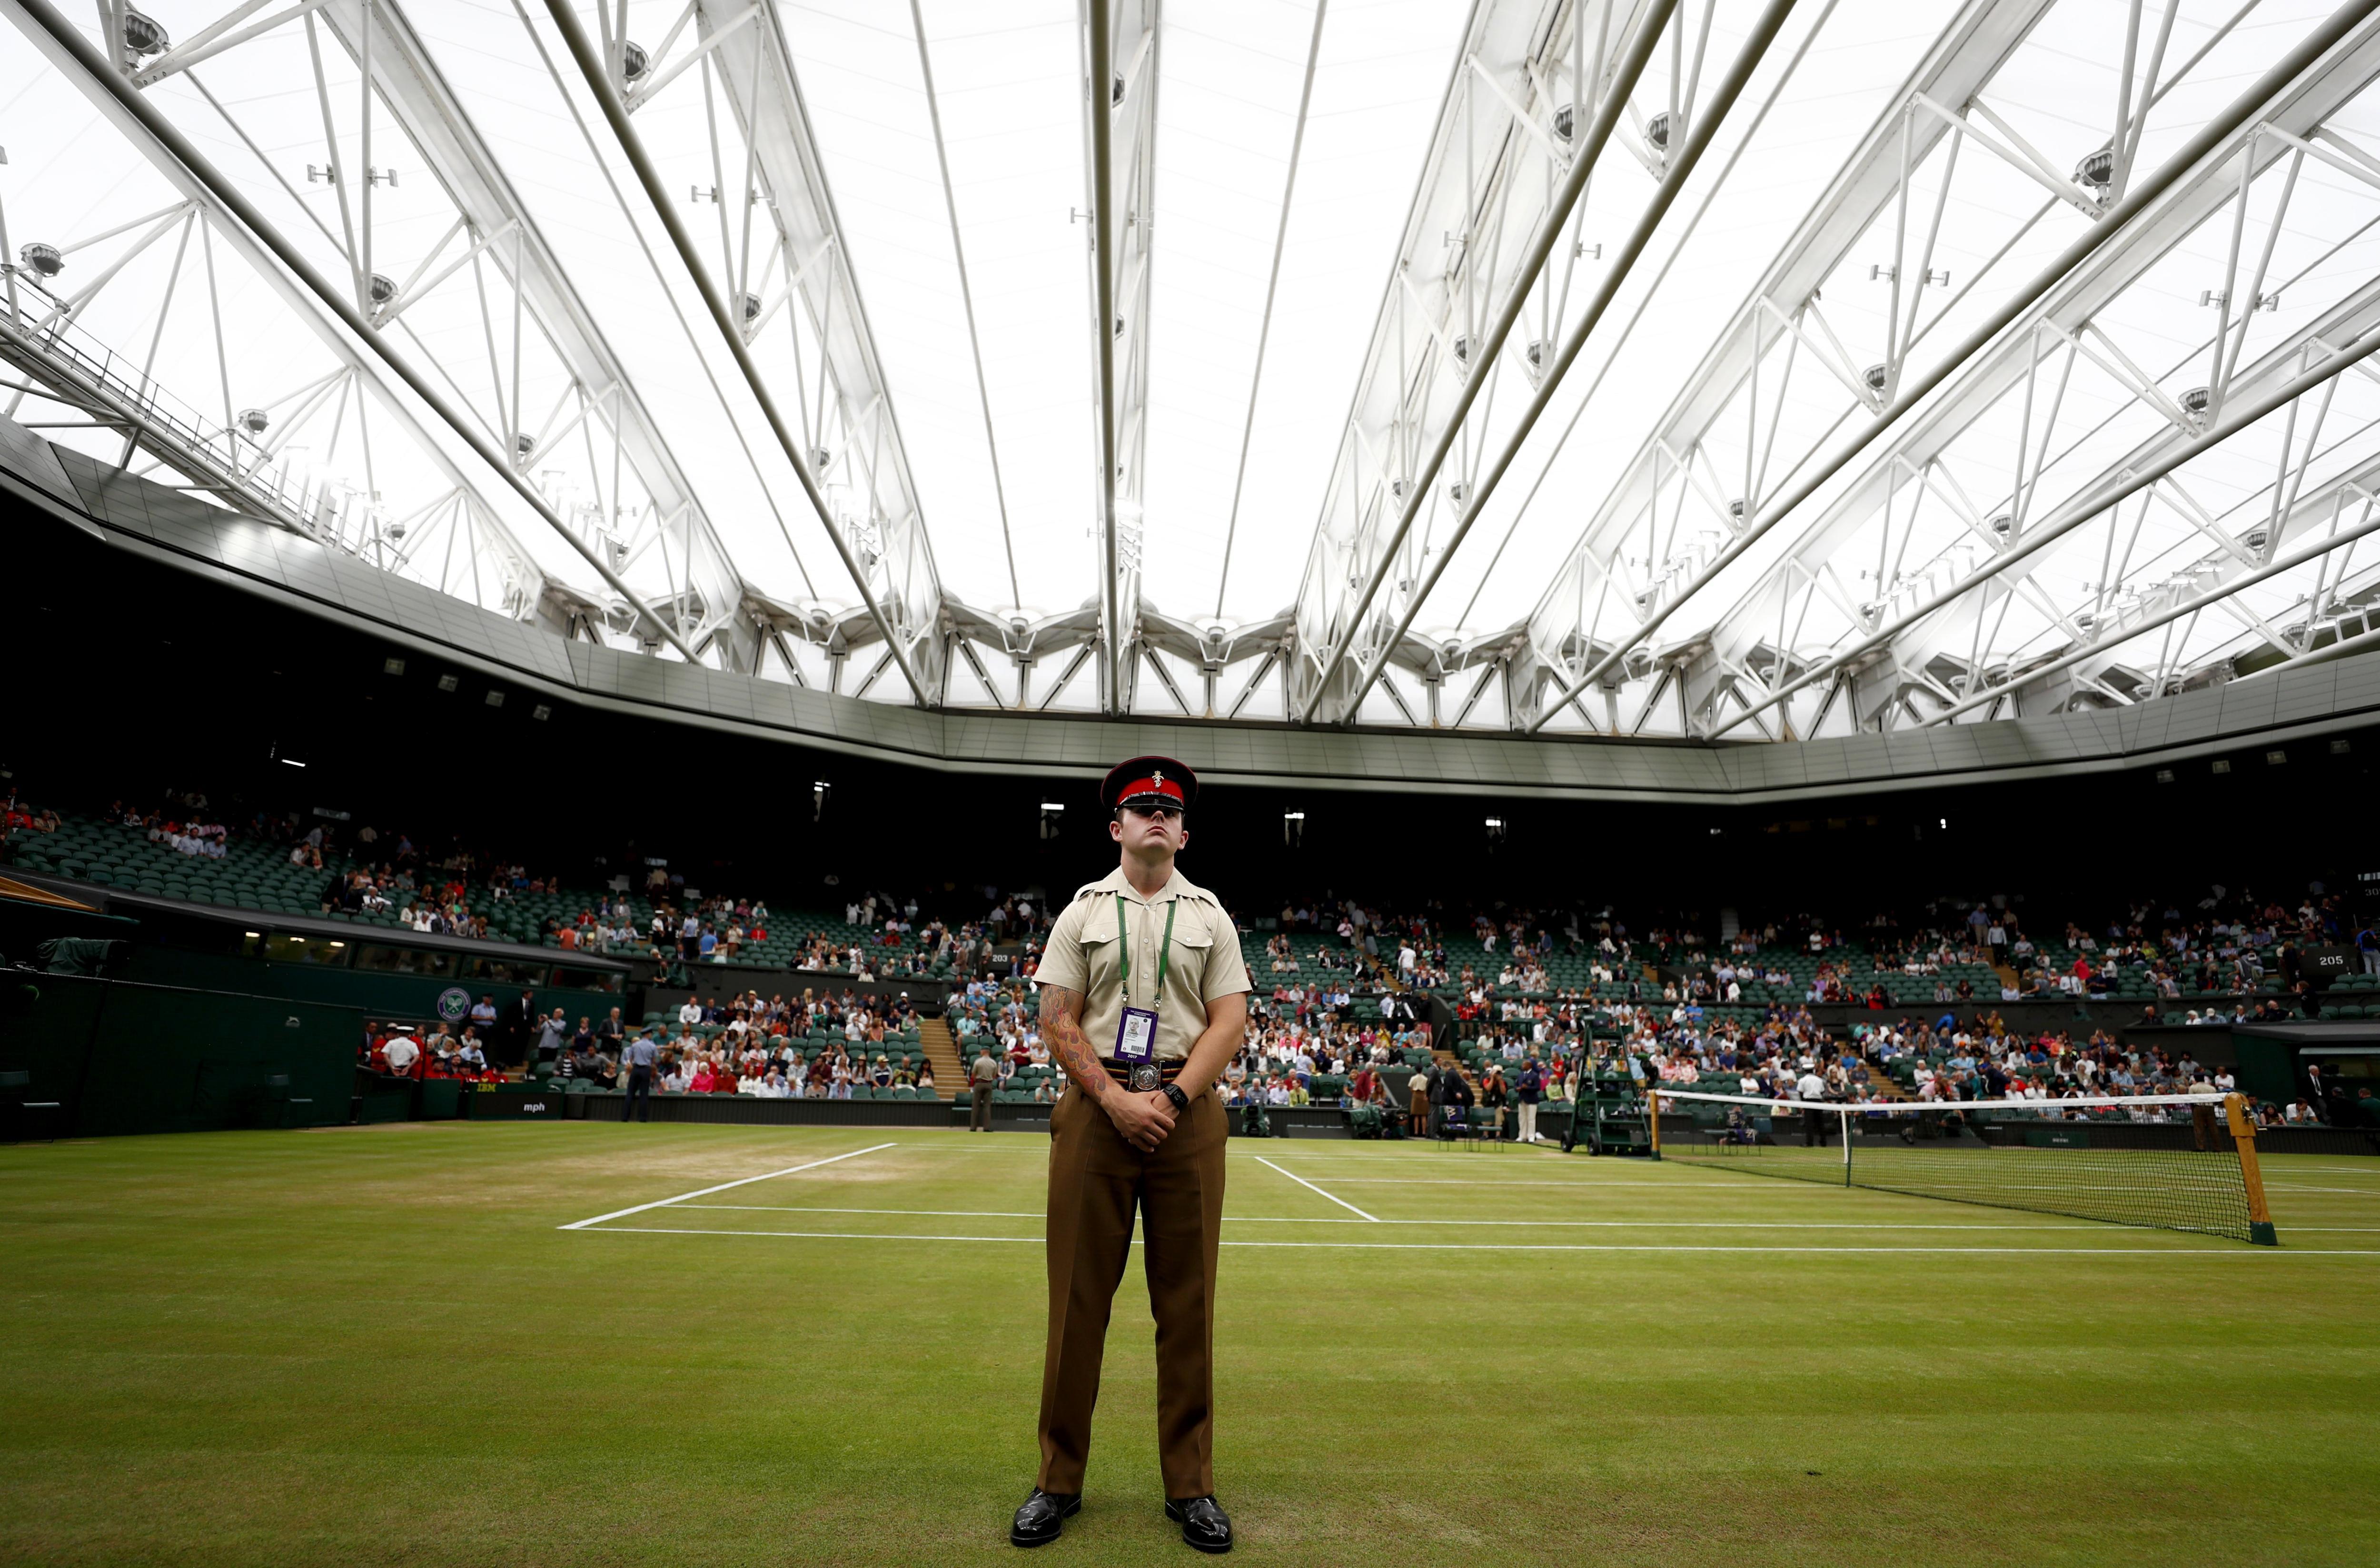 Cancel·lat el torneig de tennis de Wimbledon pel coronavirus